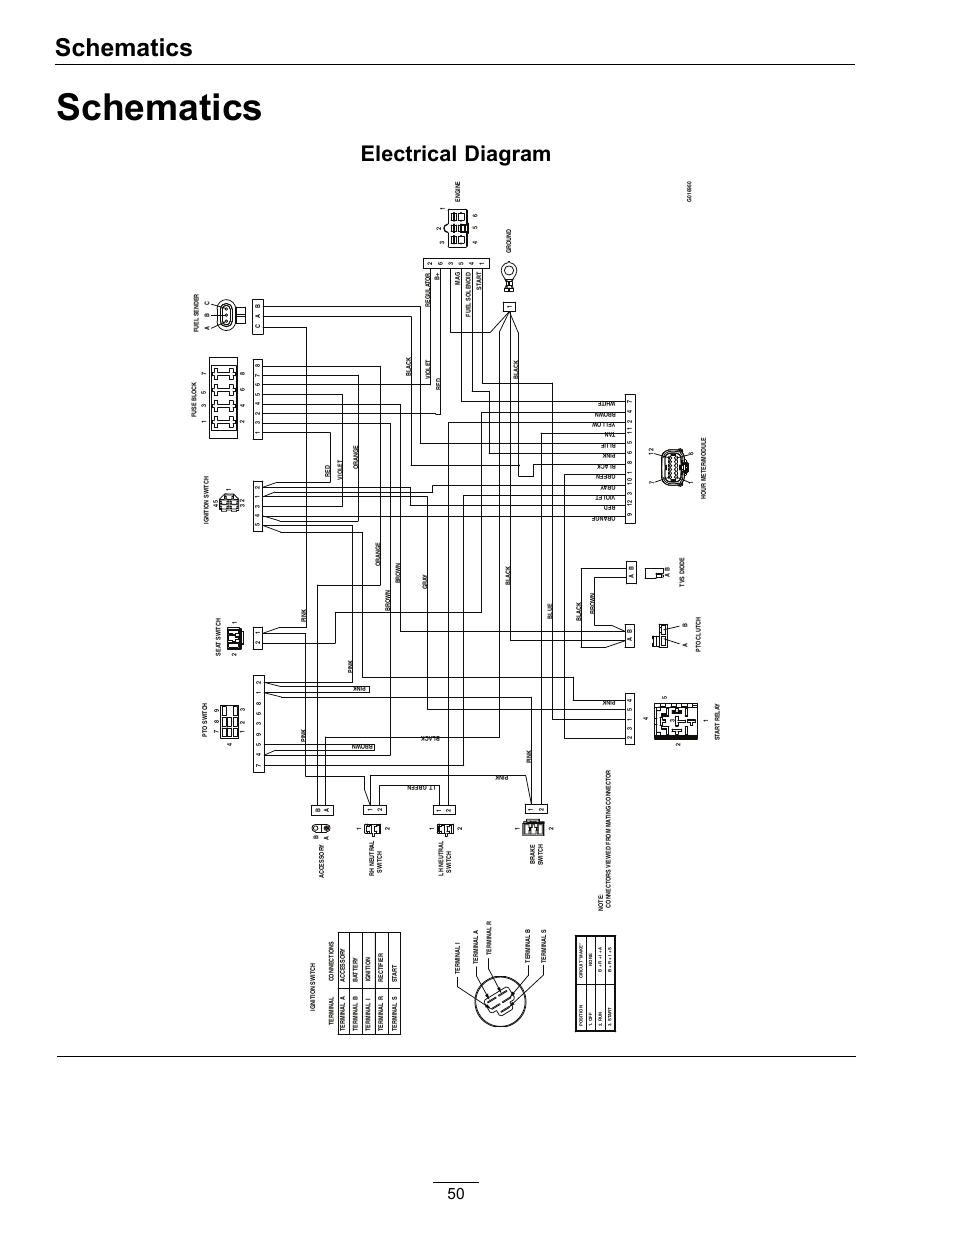 1985 kawasaki bayou 185 wiring diagram